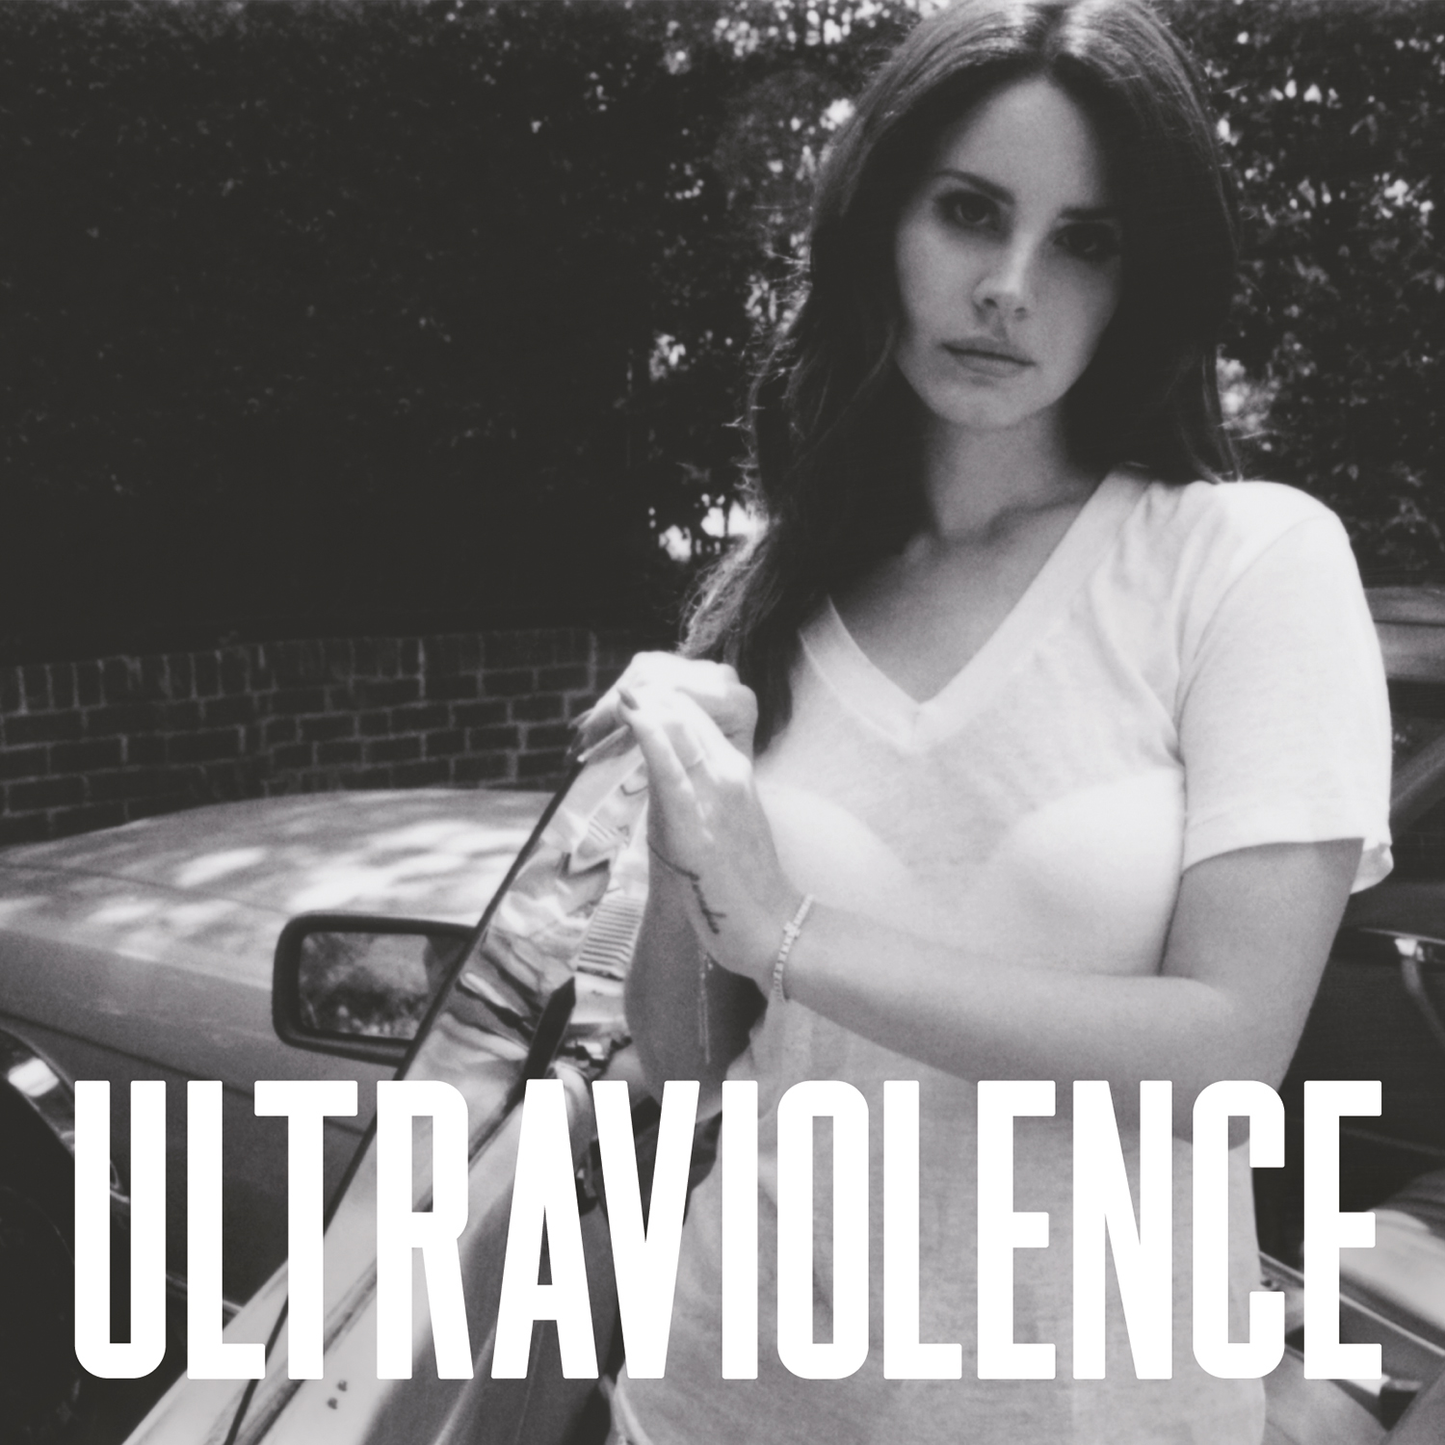 Del Rey, Lana - Ultraviolence